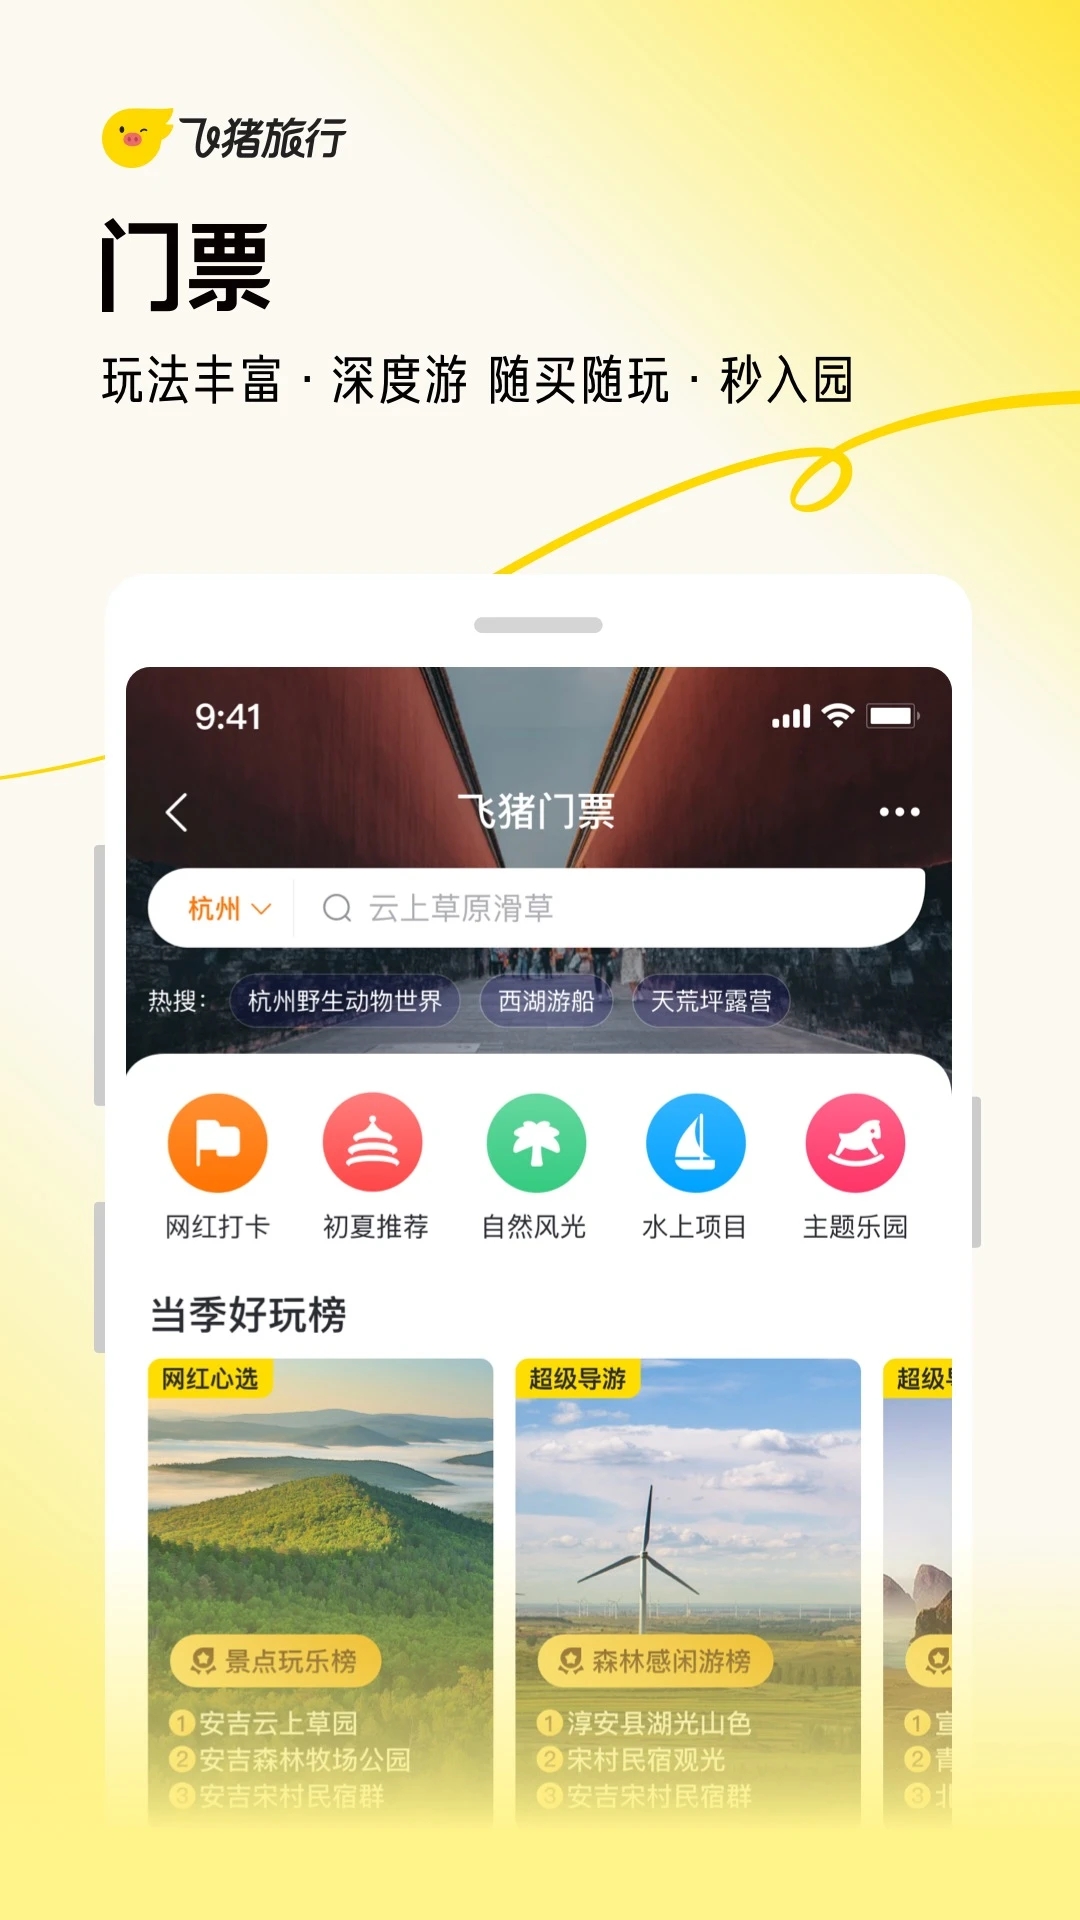 飞猪旅行官方app